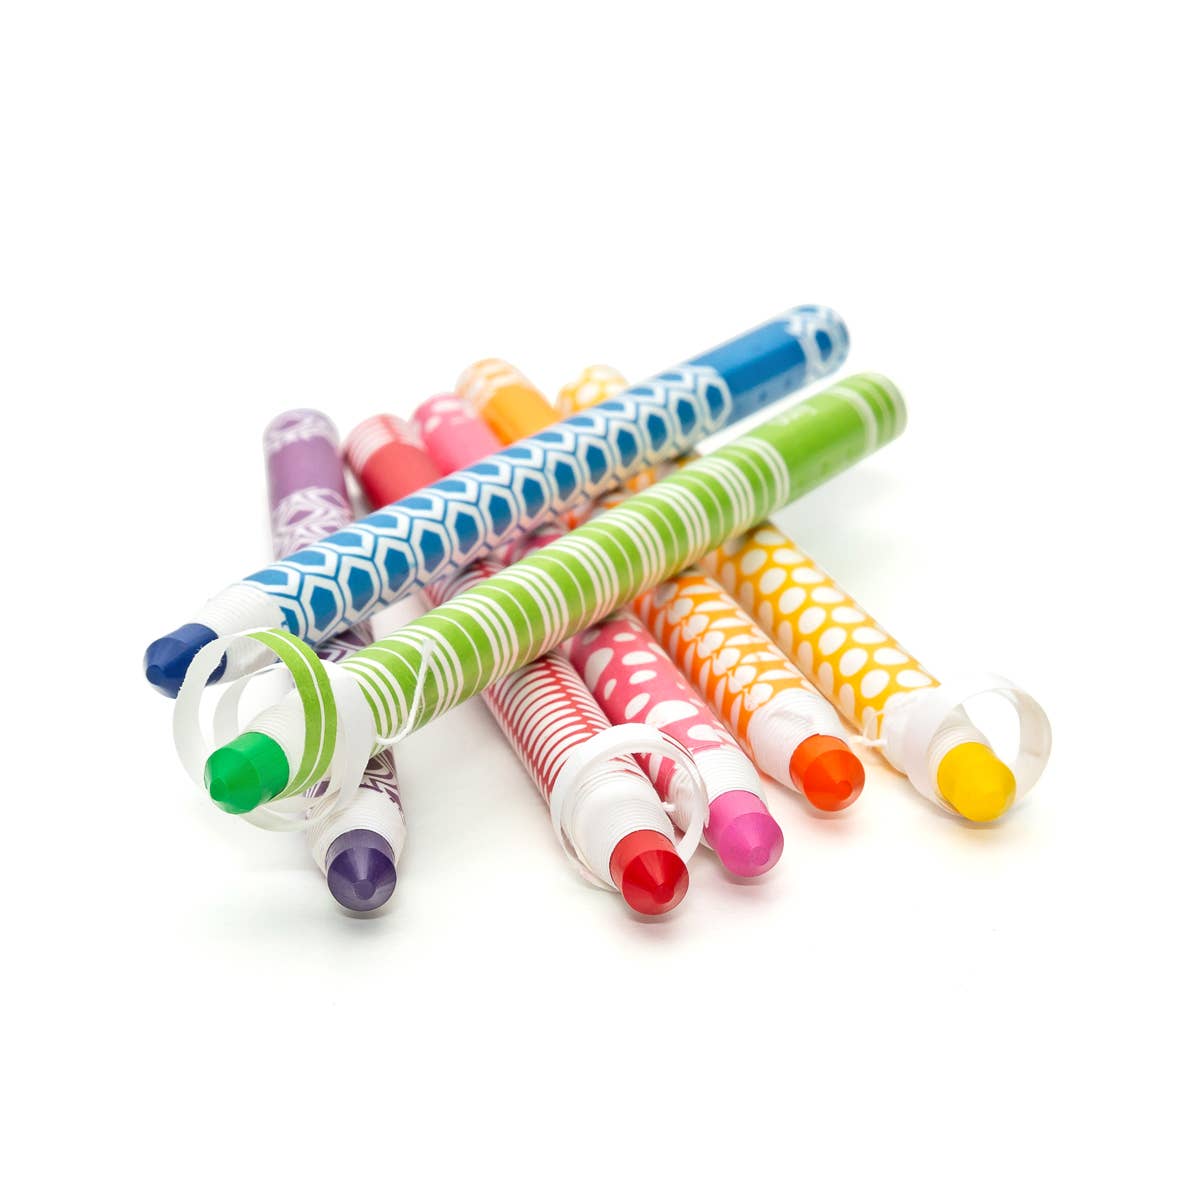 Bâtons de crayon d'apparence de couleur